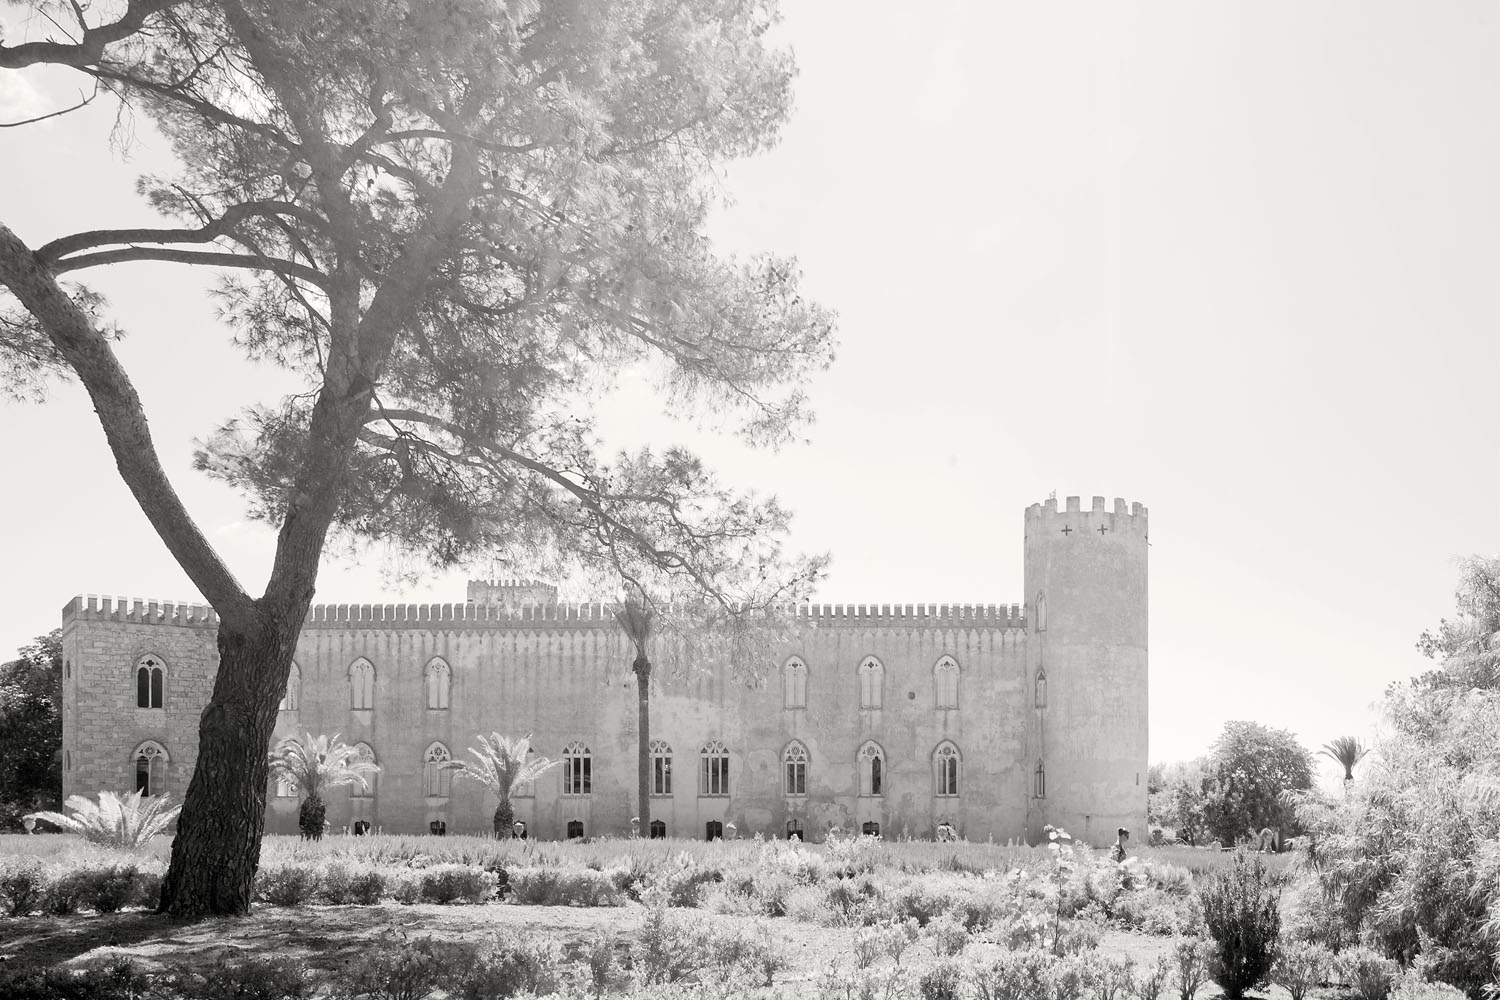 Sicily - Castello di Donnafugata